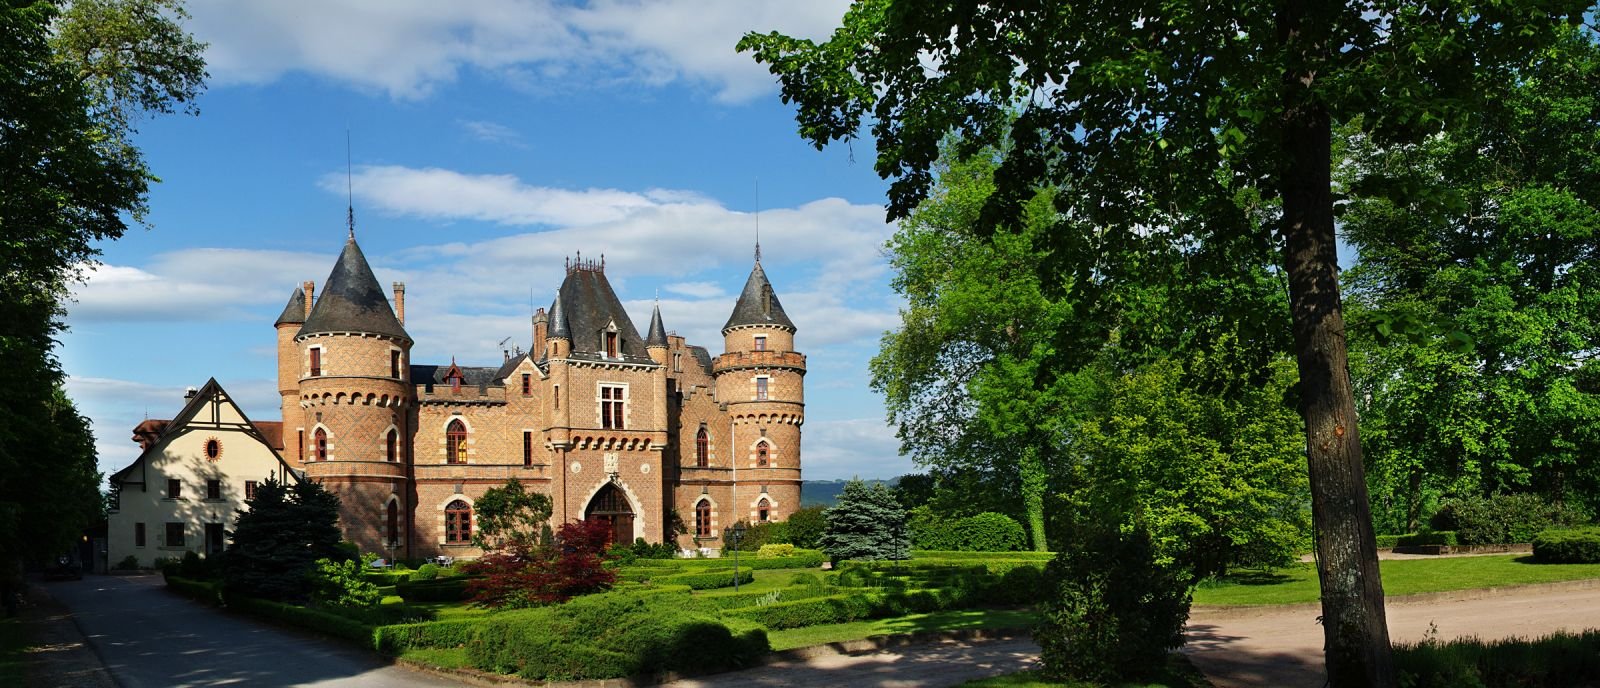 Chateau de Maulmont